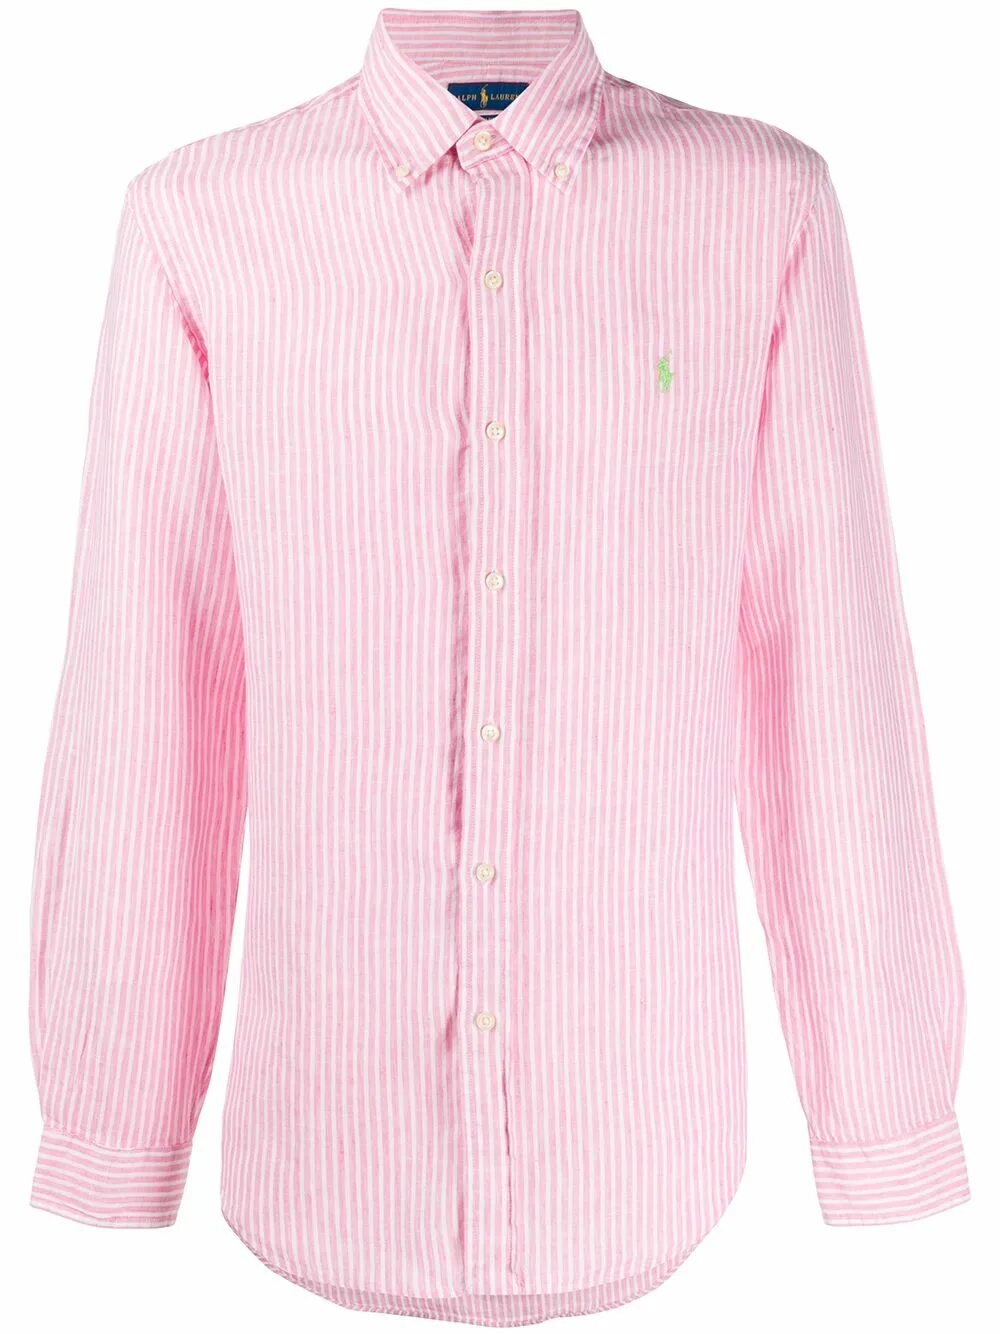 Розовая рубашка в полоску. Полосатая рубашка Ральф Лорен. Мужская рубашка розовая Ральф Лорен. Рубашка Ральф Лорен в полоску. Рубашка Polo Ralph Lauren розовая.